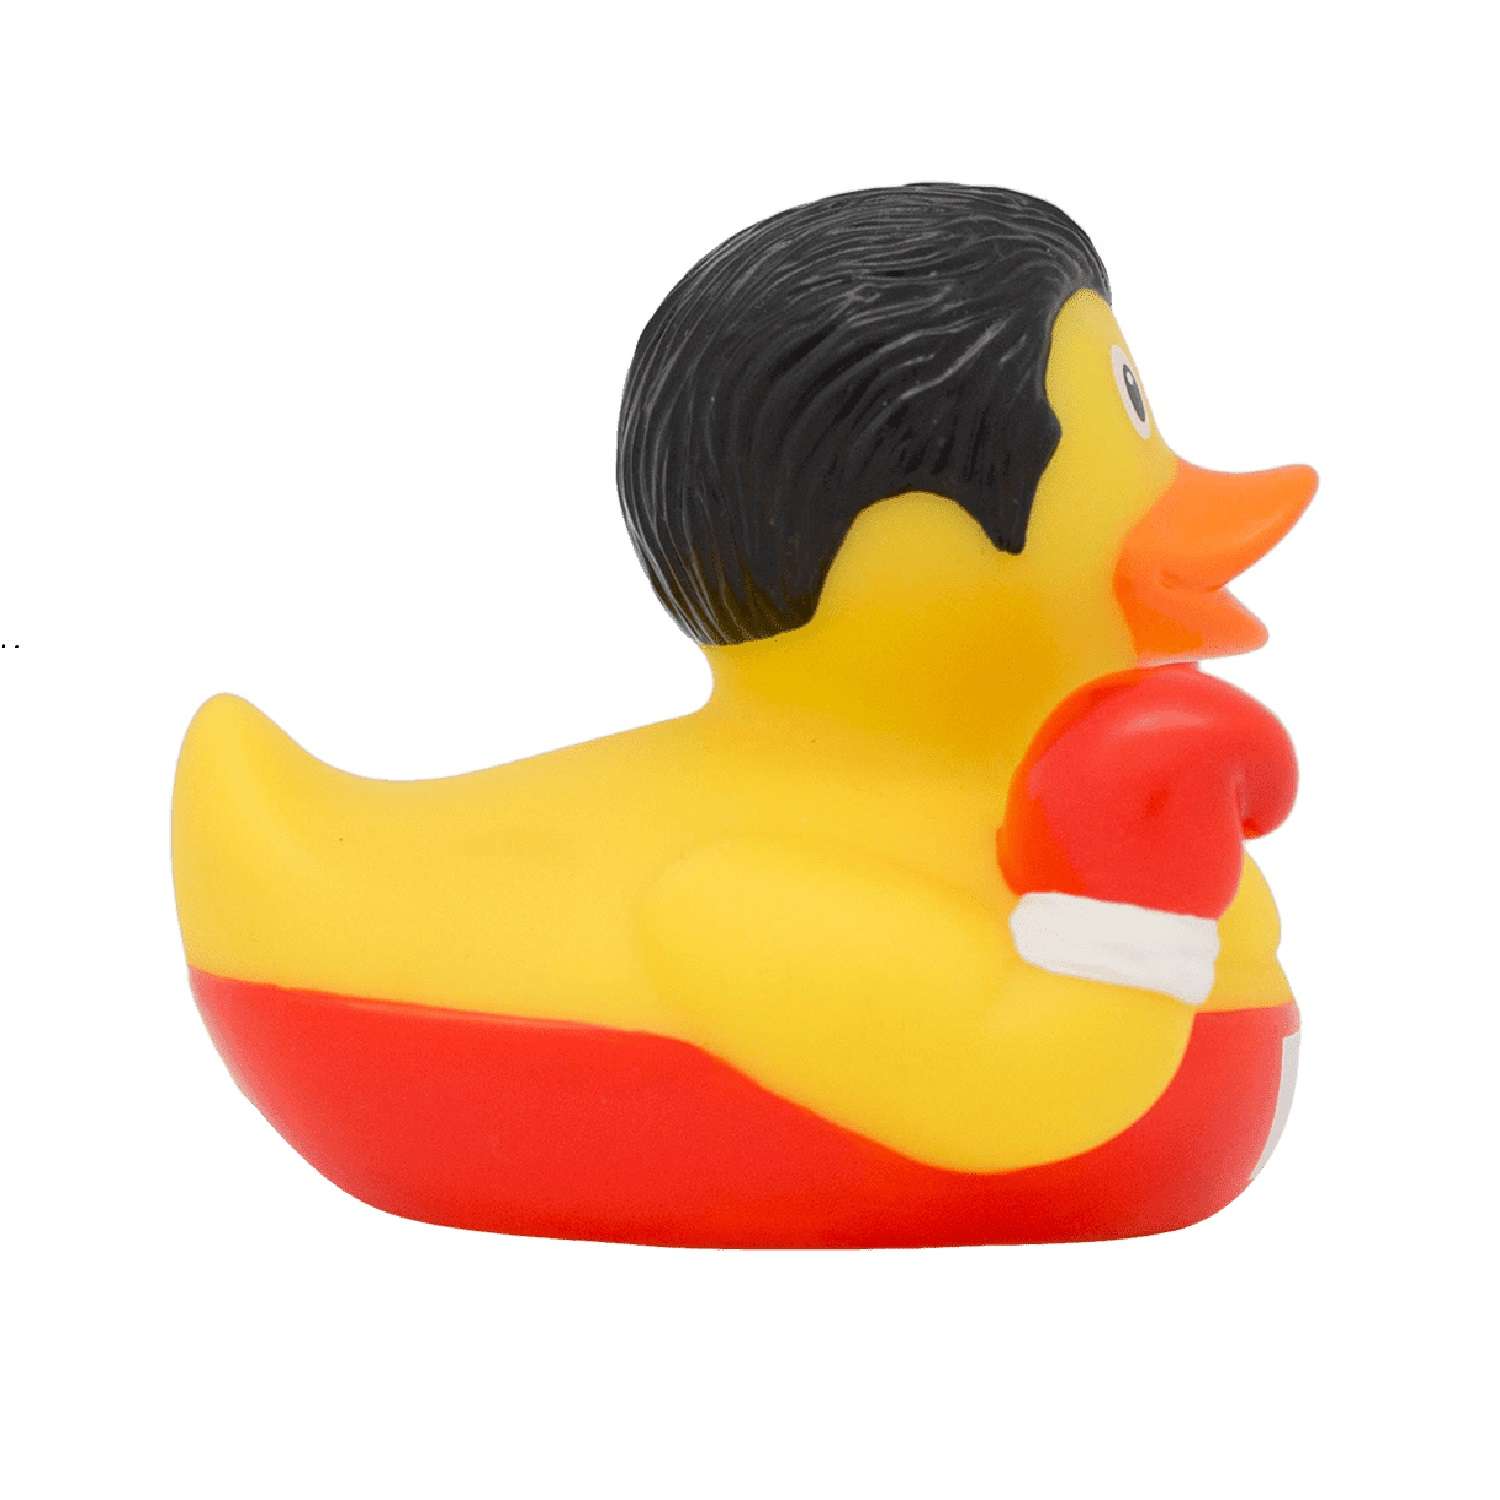 Игрушка Funny ducks для ванной Боксер уточка 1285 - фото 1